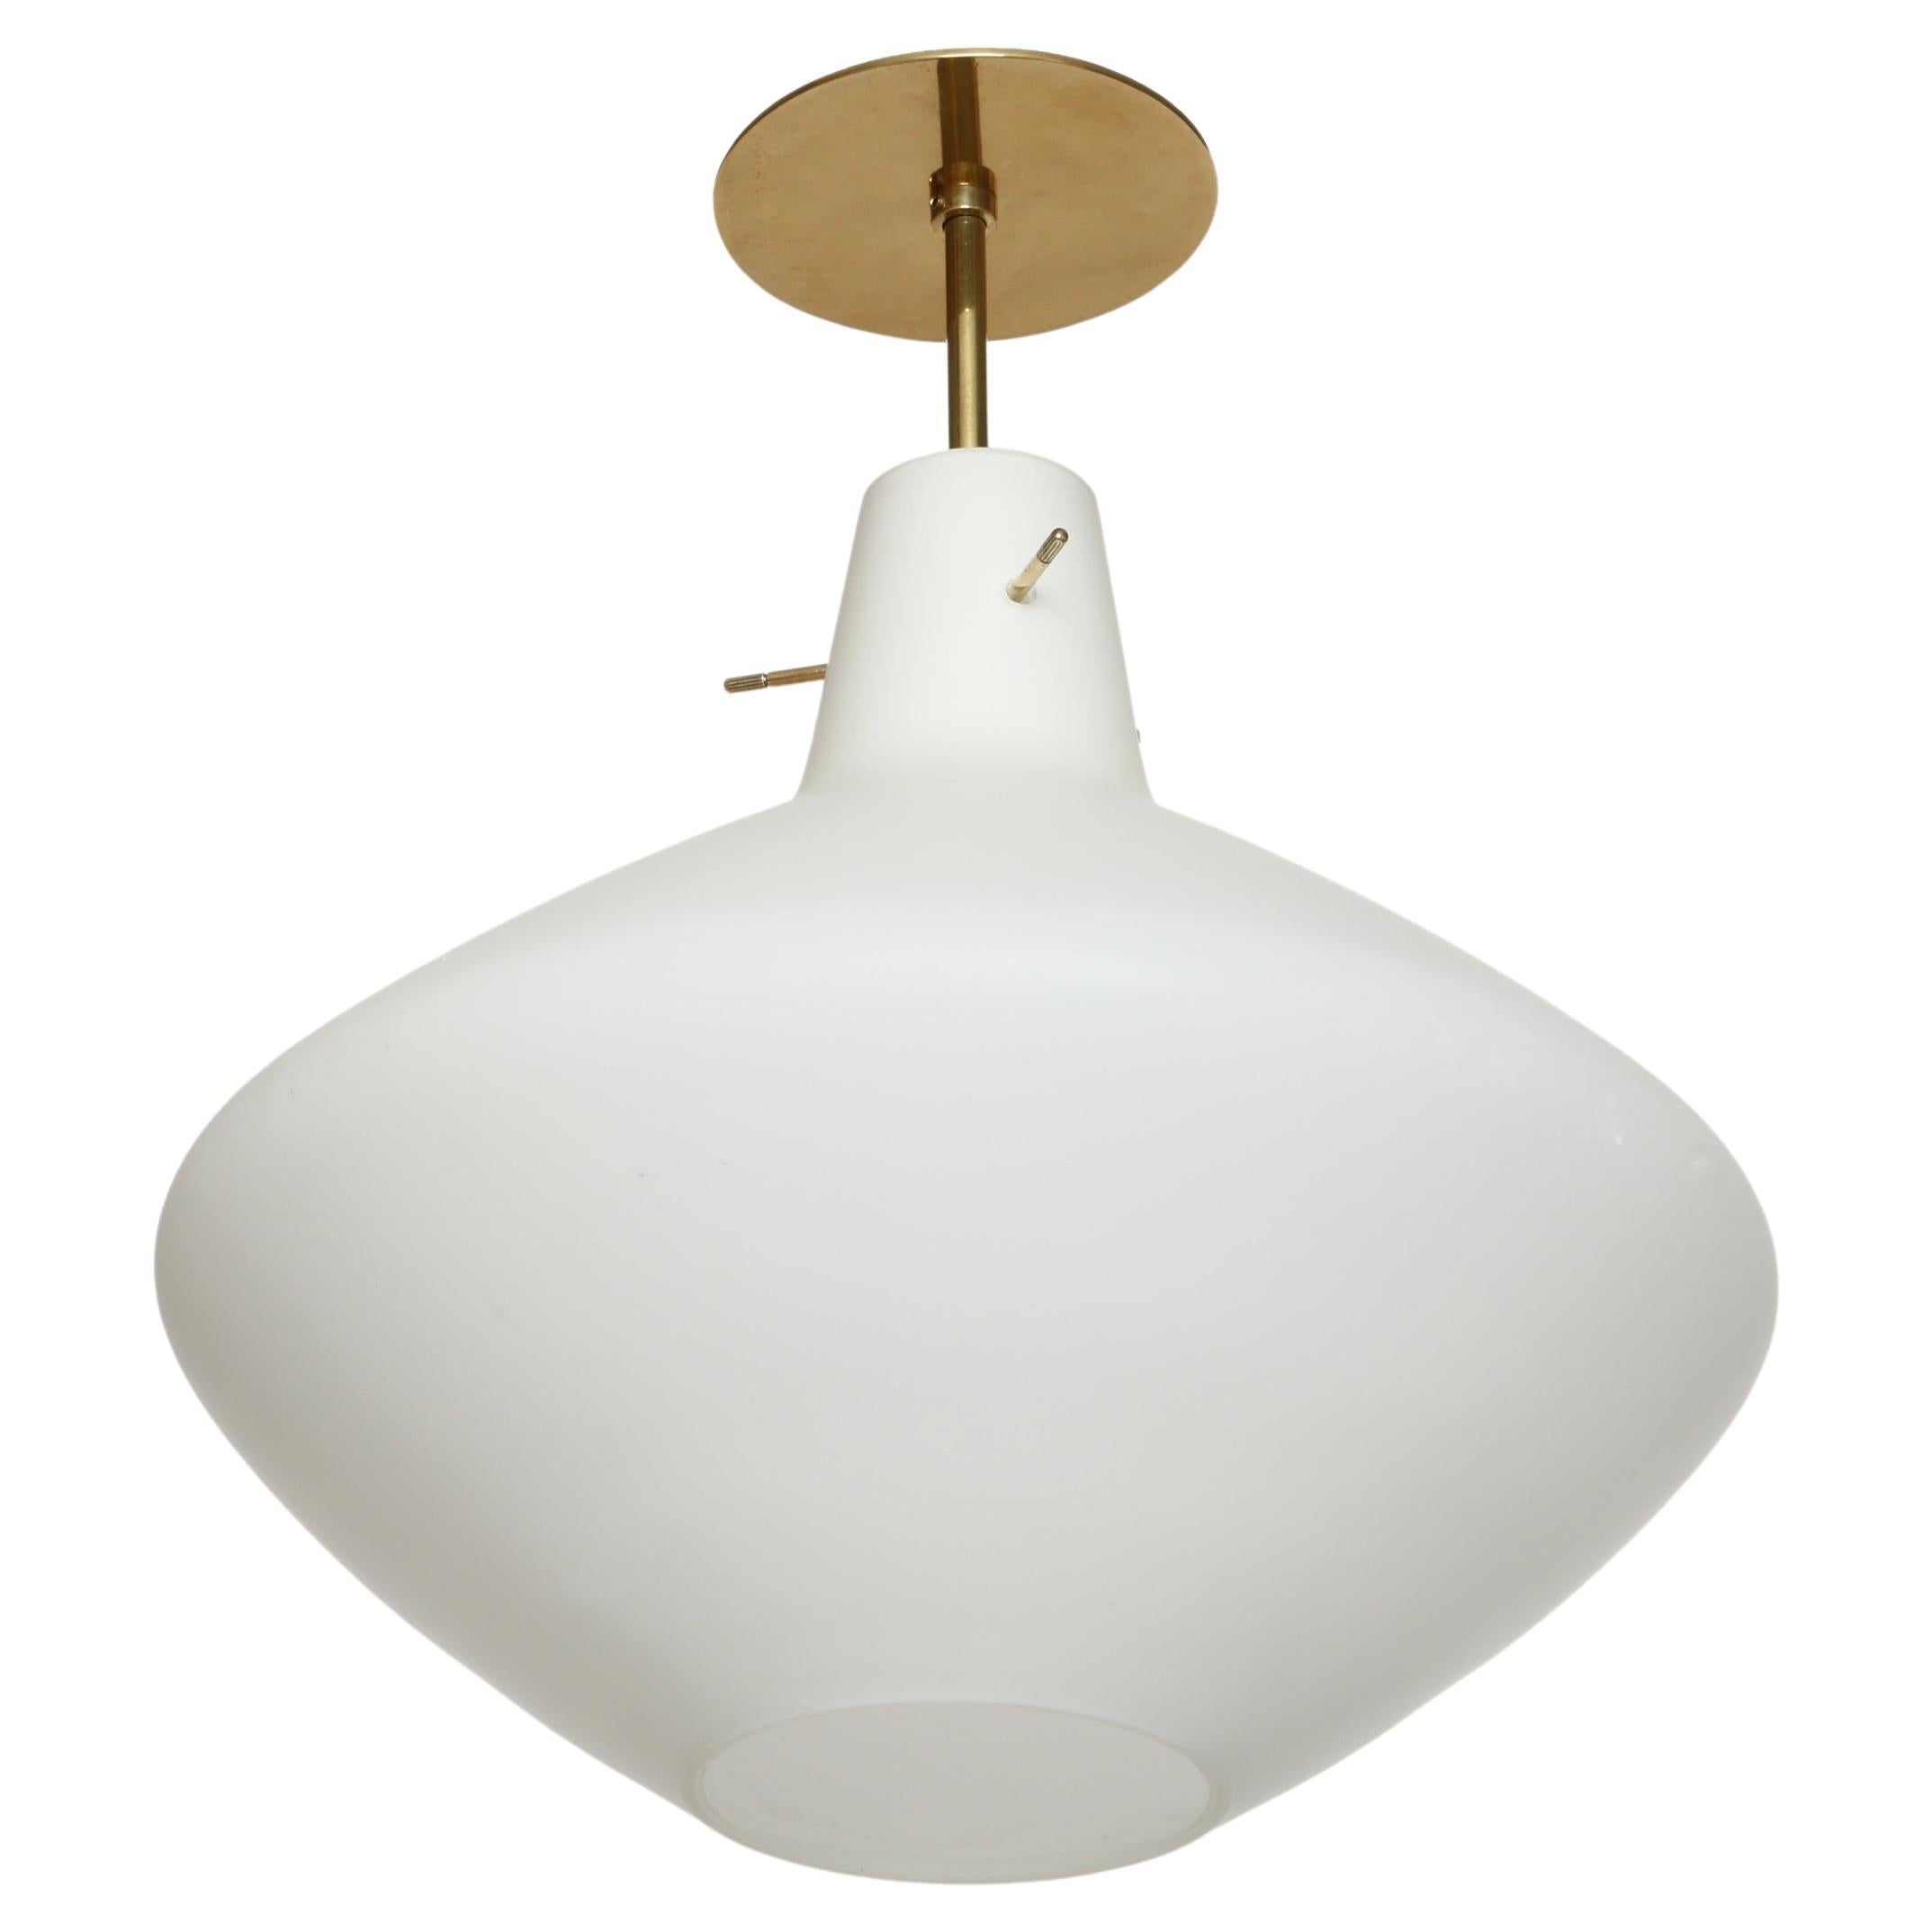 Stilnovo flush mount ceiling light.
Opaline glass, brass.
Takes 1 medium bulb.
Rewired for US.